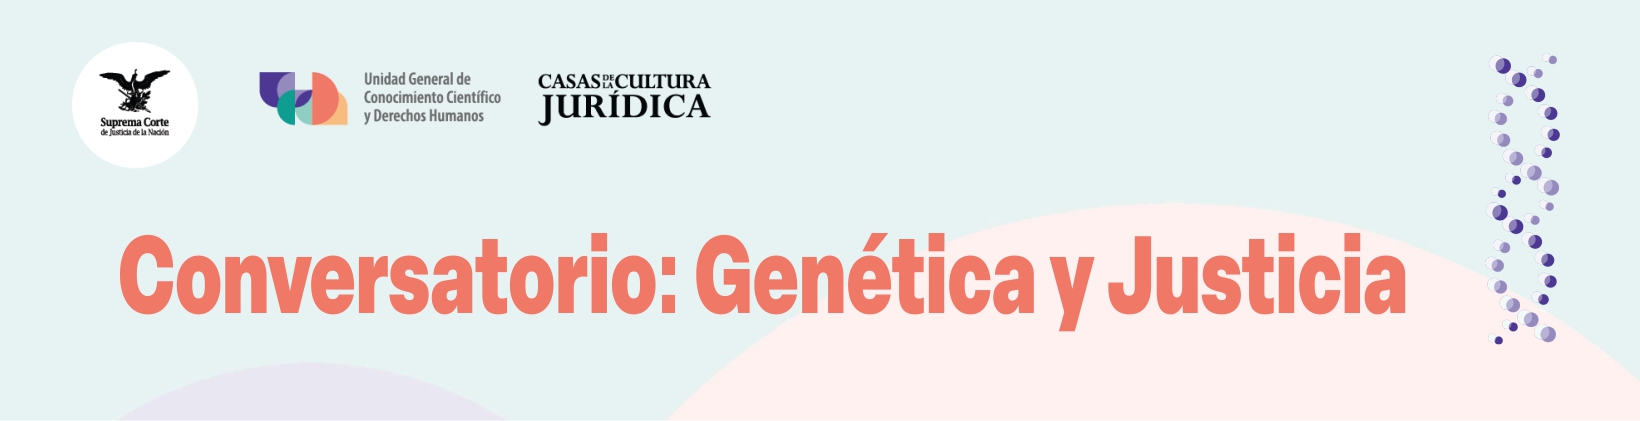 Banner Conversatorio: Genética y justicia